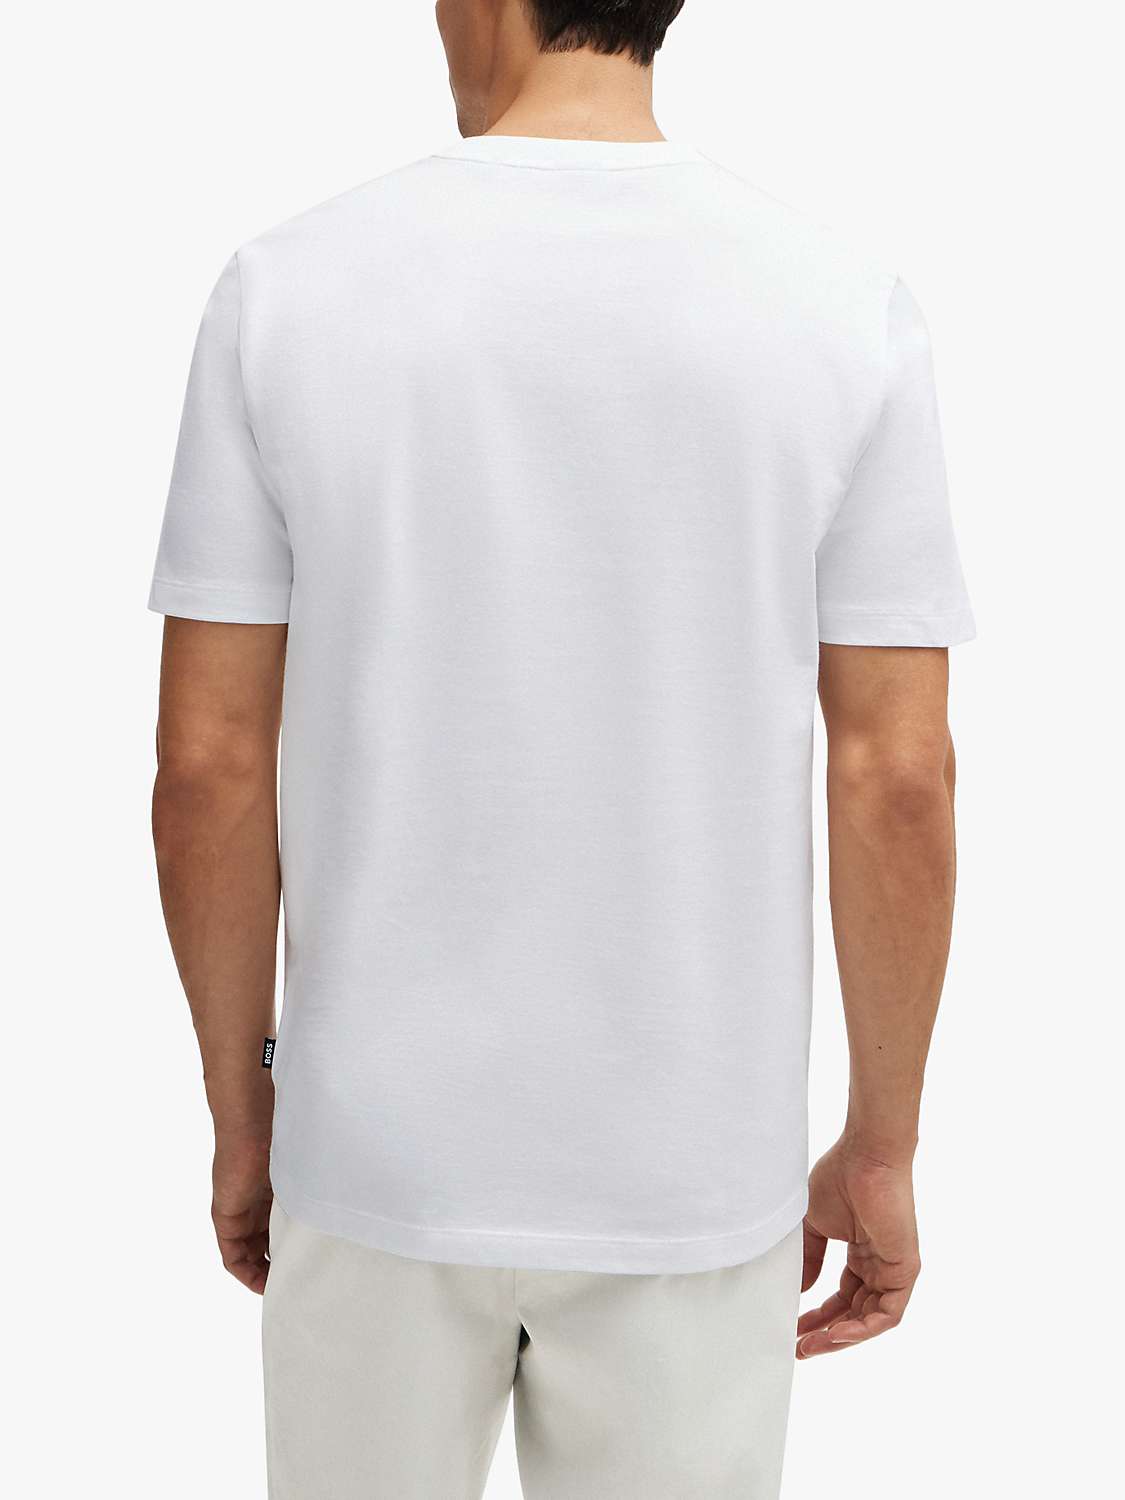 Buy BOSS Tiburt 511 Short Sleeve T-Shirt, White/Multi Online at johnlewis.com